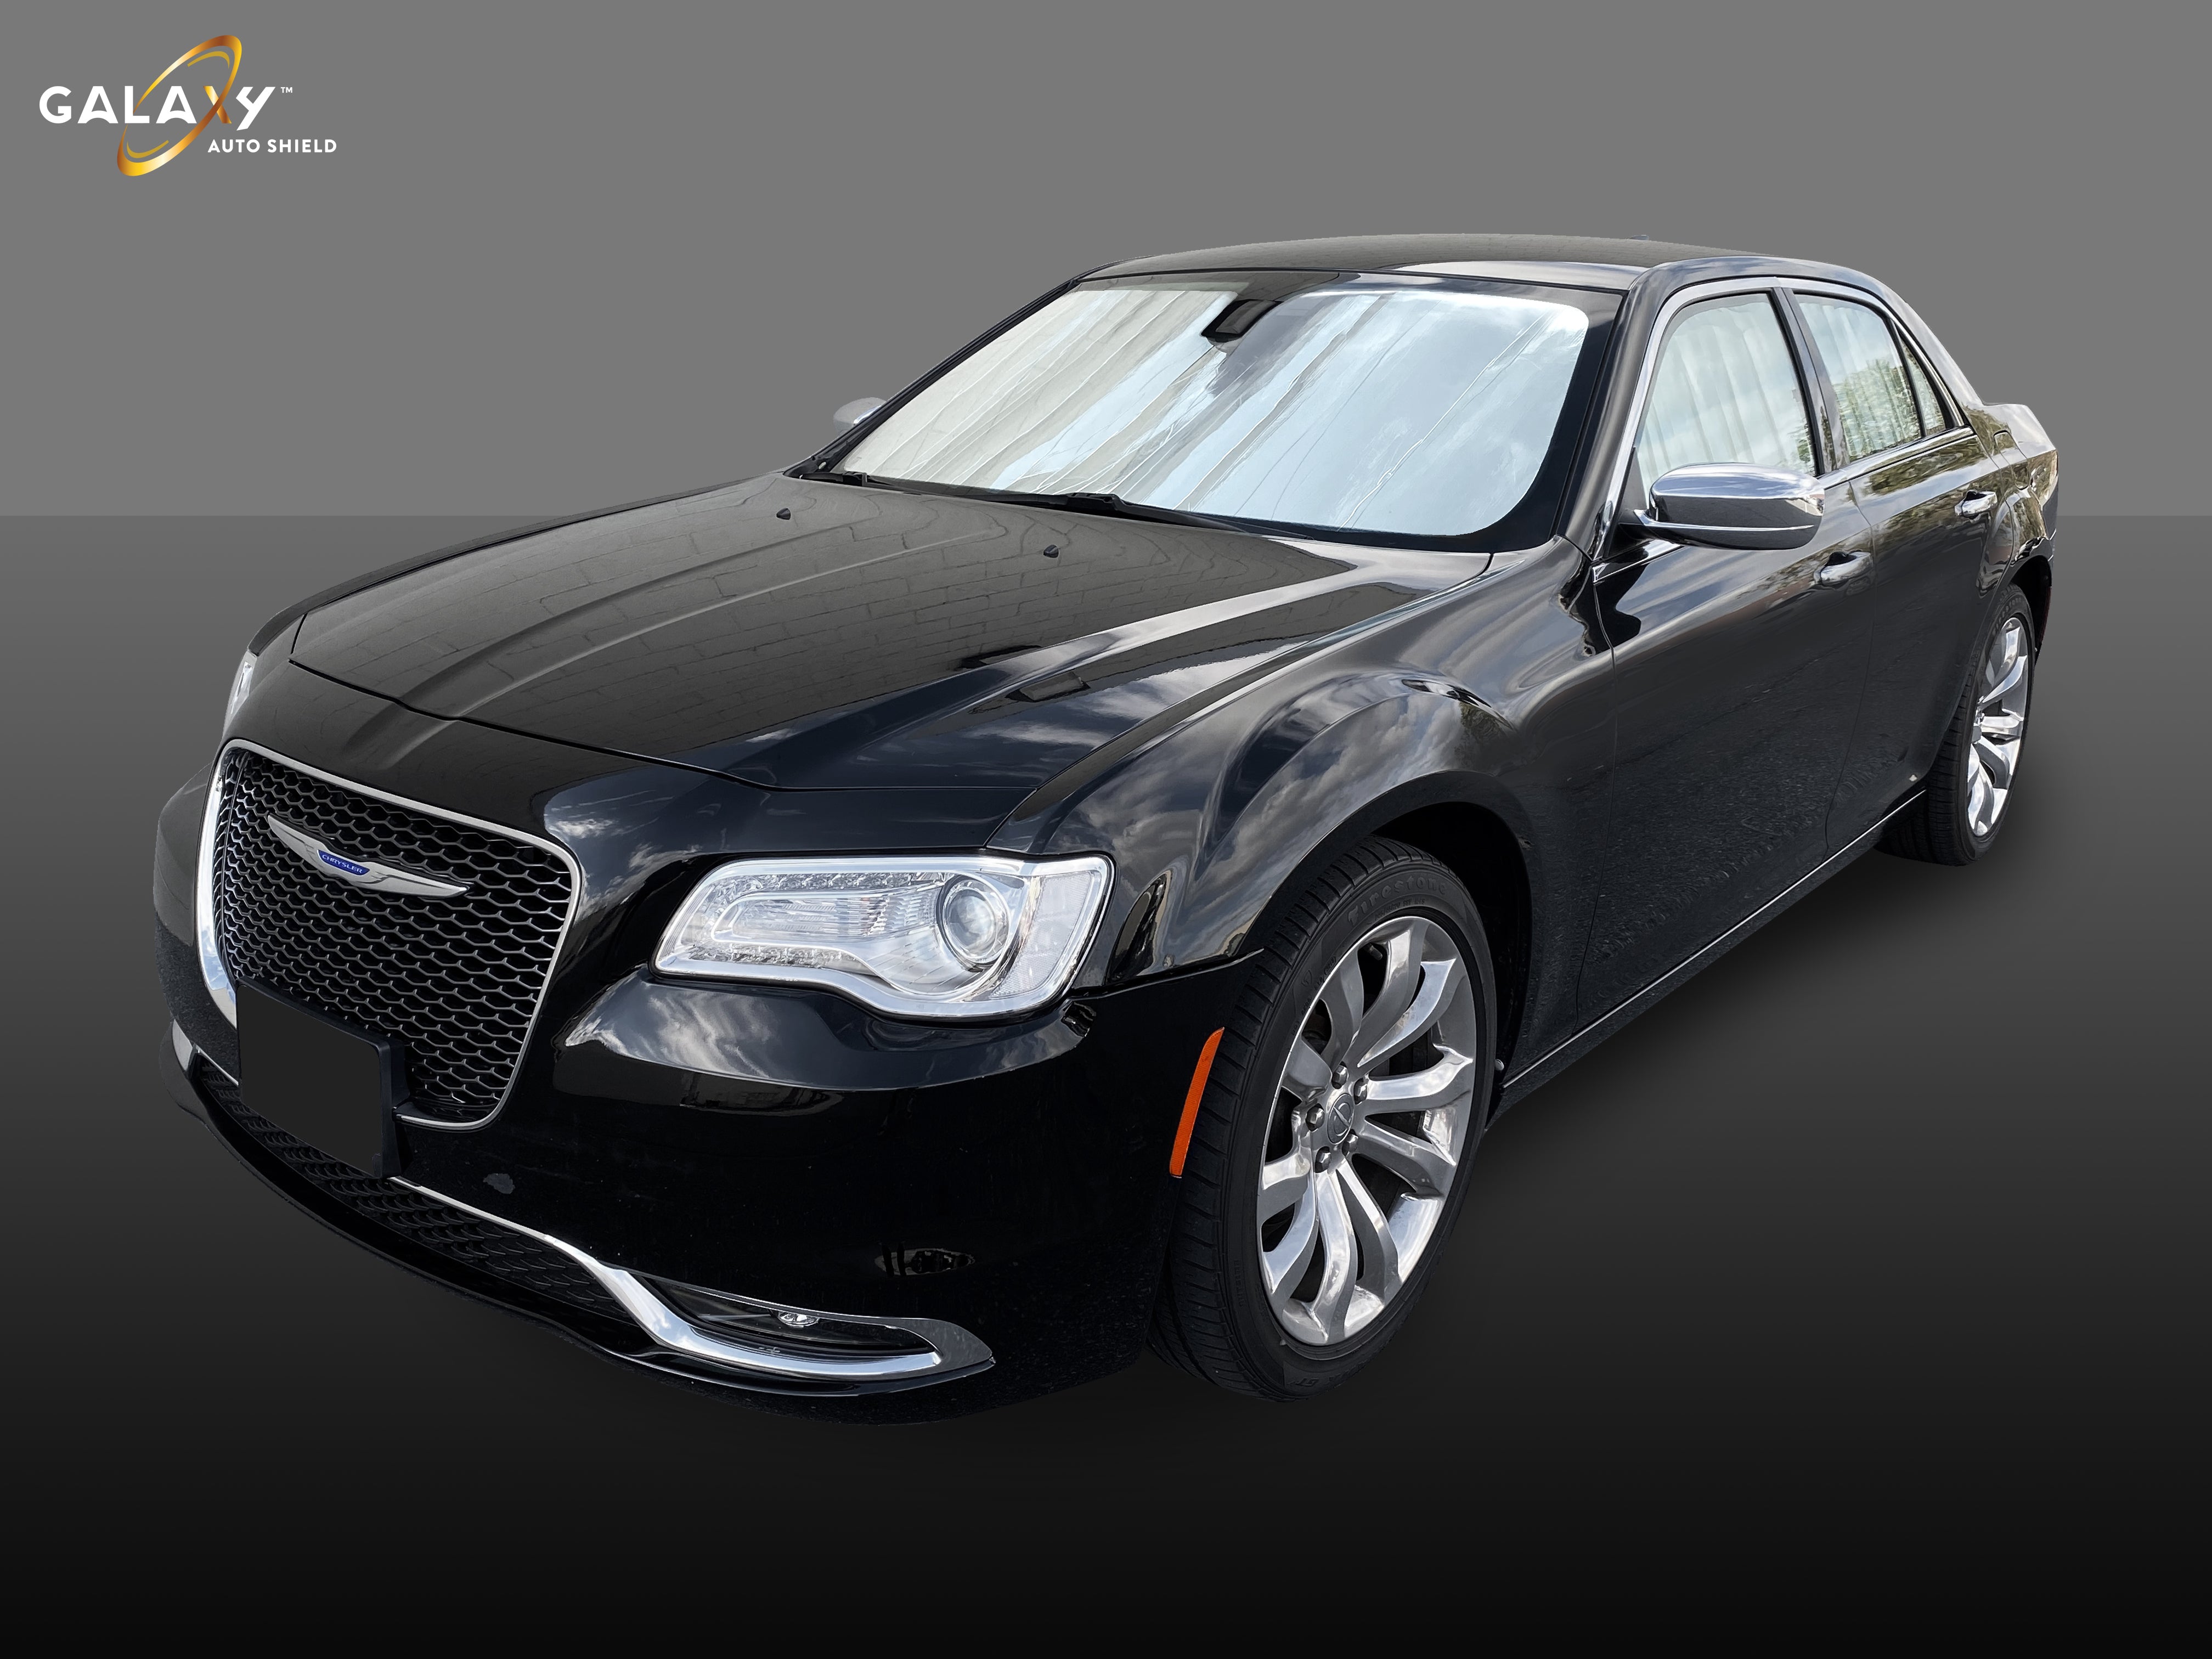 Sunshades for 2011-2023 Chrysler 300 Sedan (View for more options)